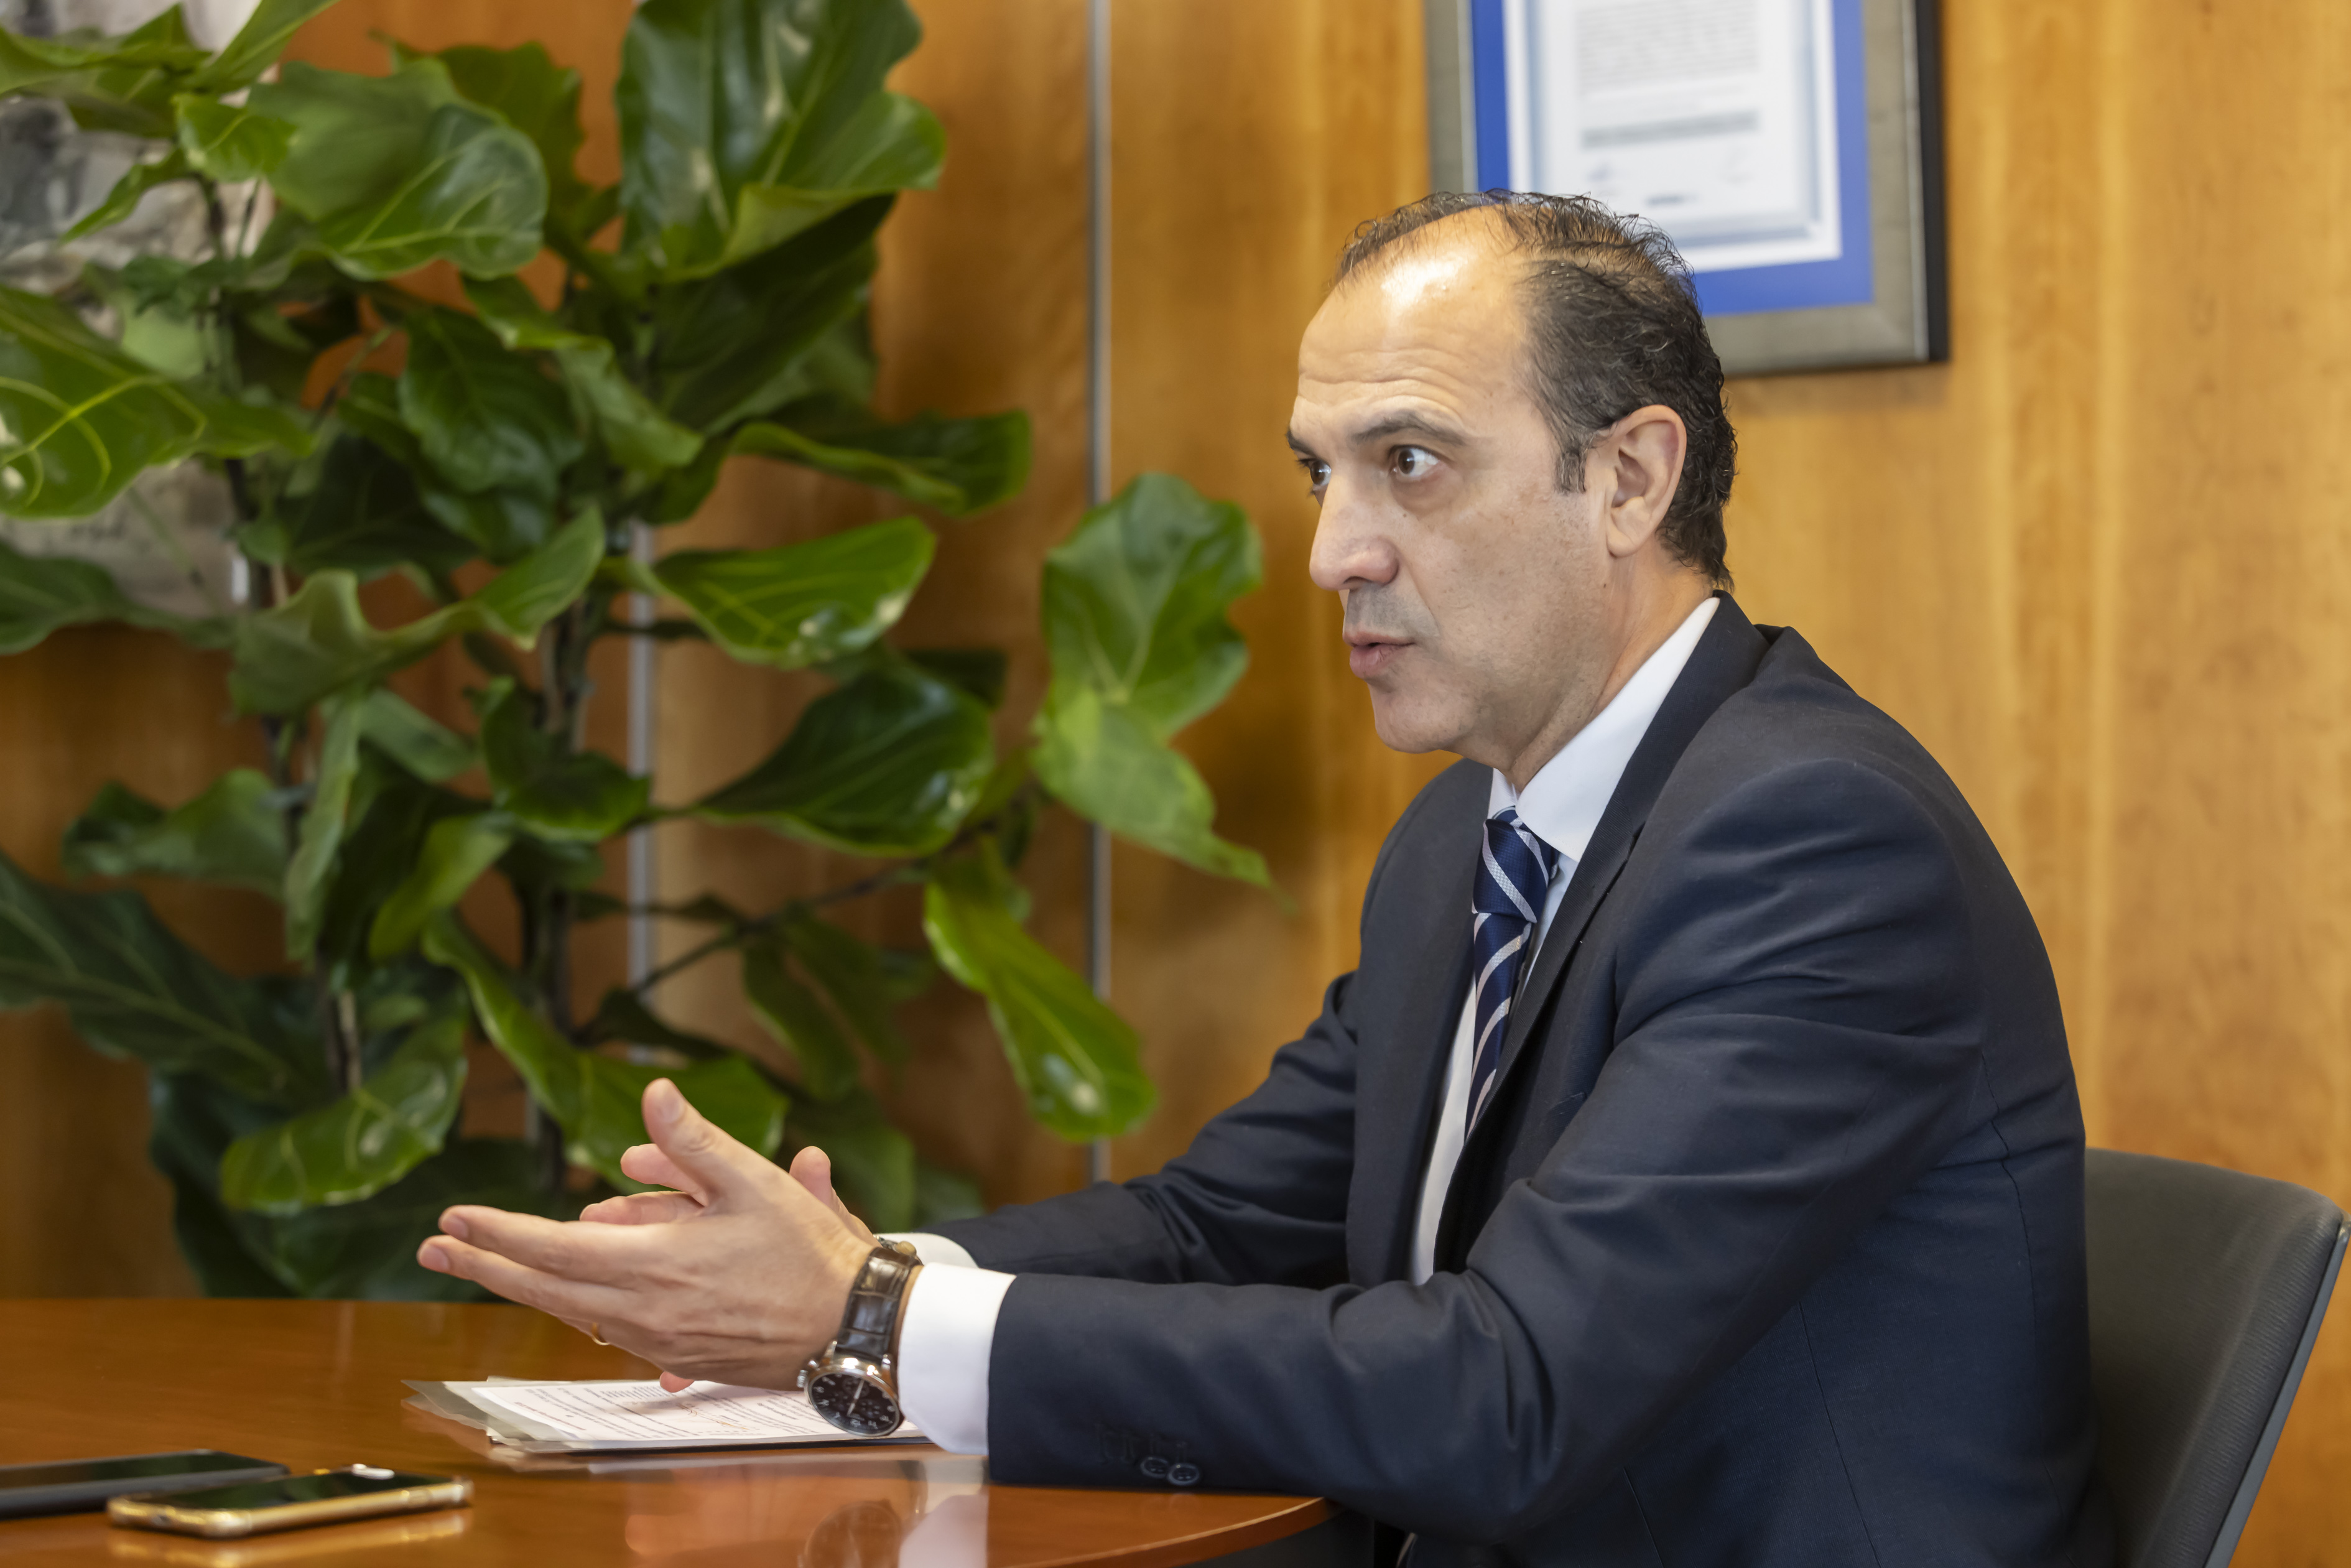 José Luis Bancalero interviewed by HERALDO